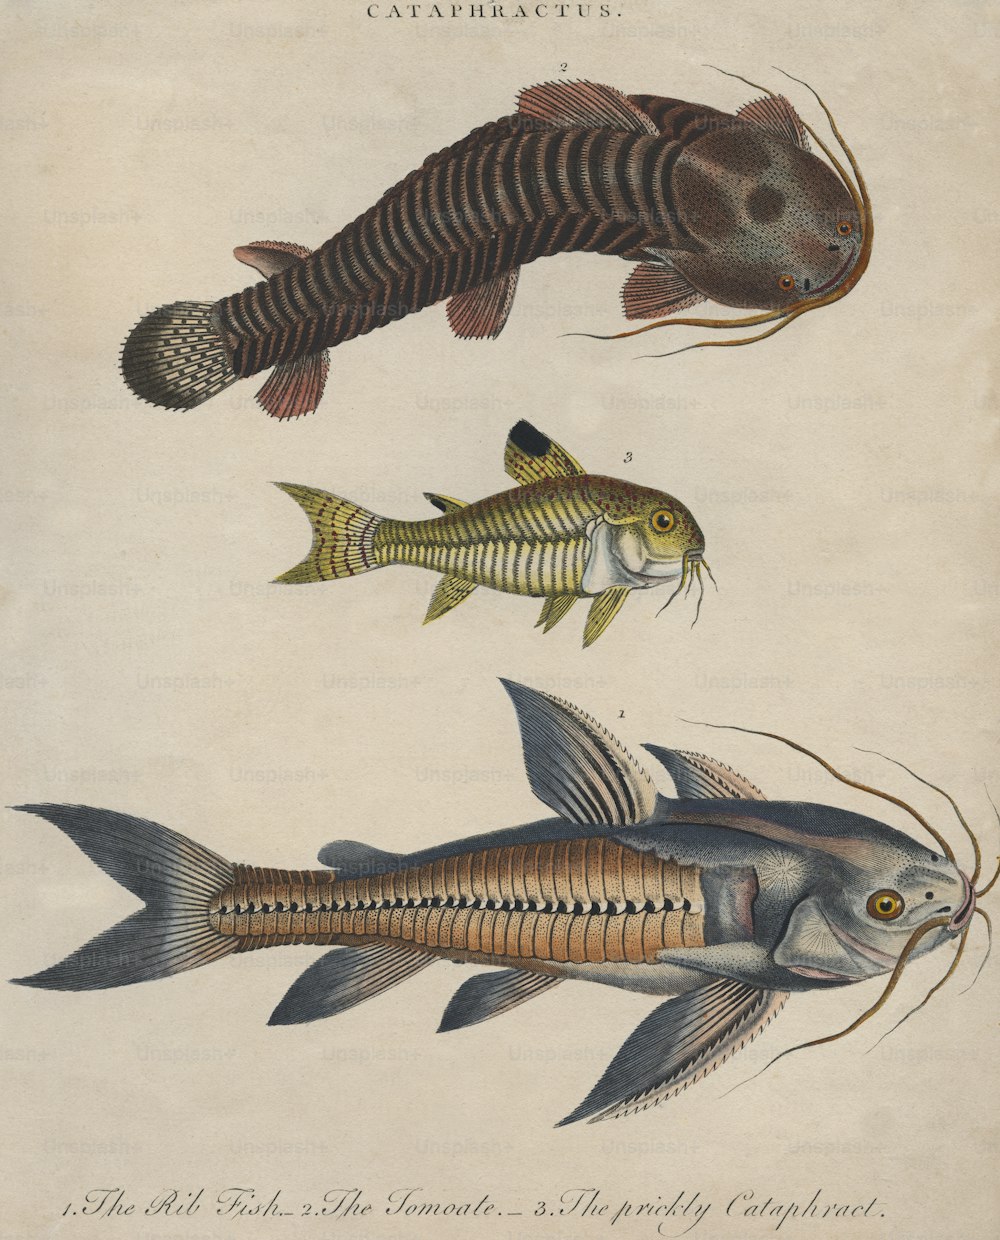 Trois espèces de poissons-chats, vers 1800. De haut en bas, un tomoate, un cataphracte épineux et un poisson à côtes. Gravure de J. Pass. (Photo de Hulton Archive/Getty Images)